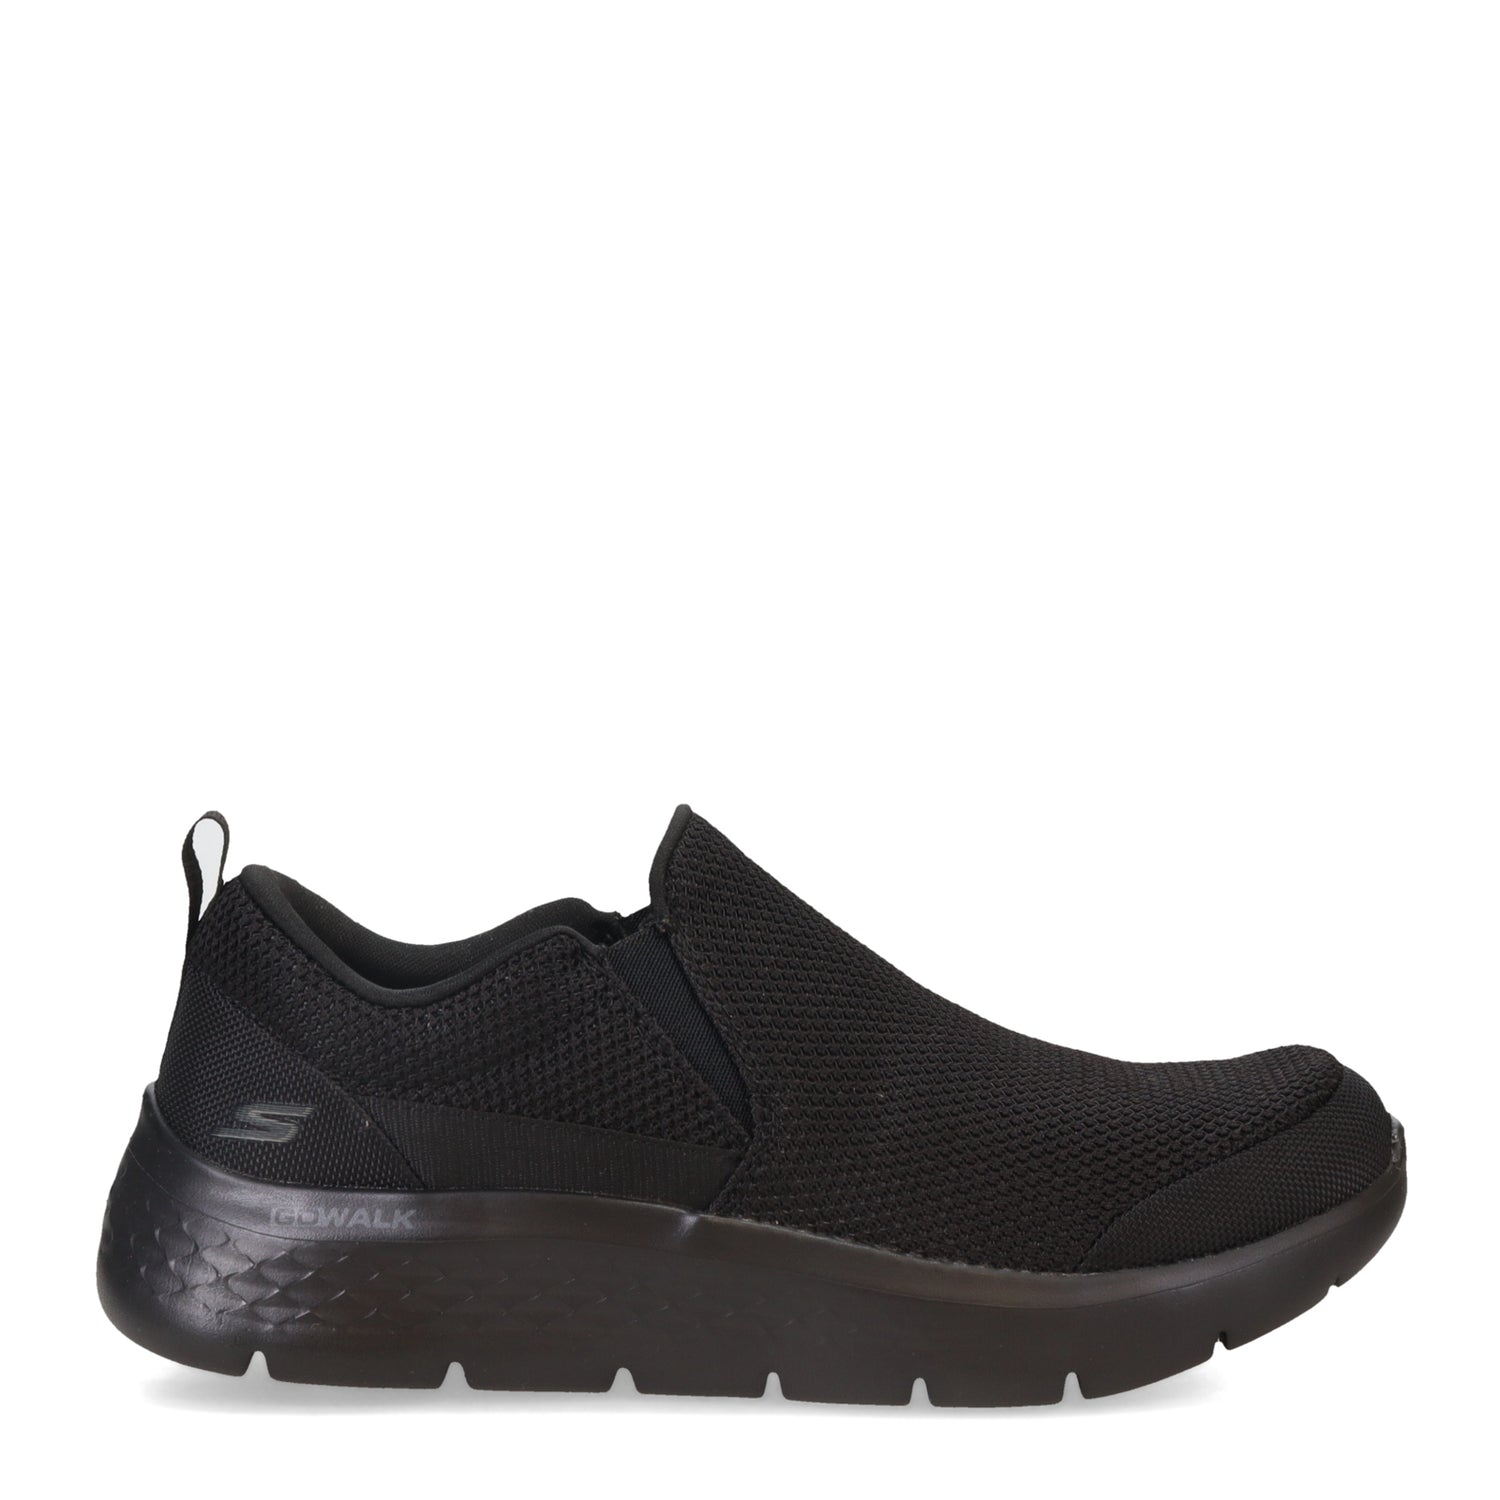 Peltz Shoes  Men's Skechers GO WALK Flex - Impeccable II Walking Shoe - Wide Width Black 216492WW-BBK